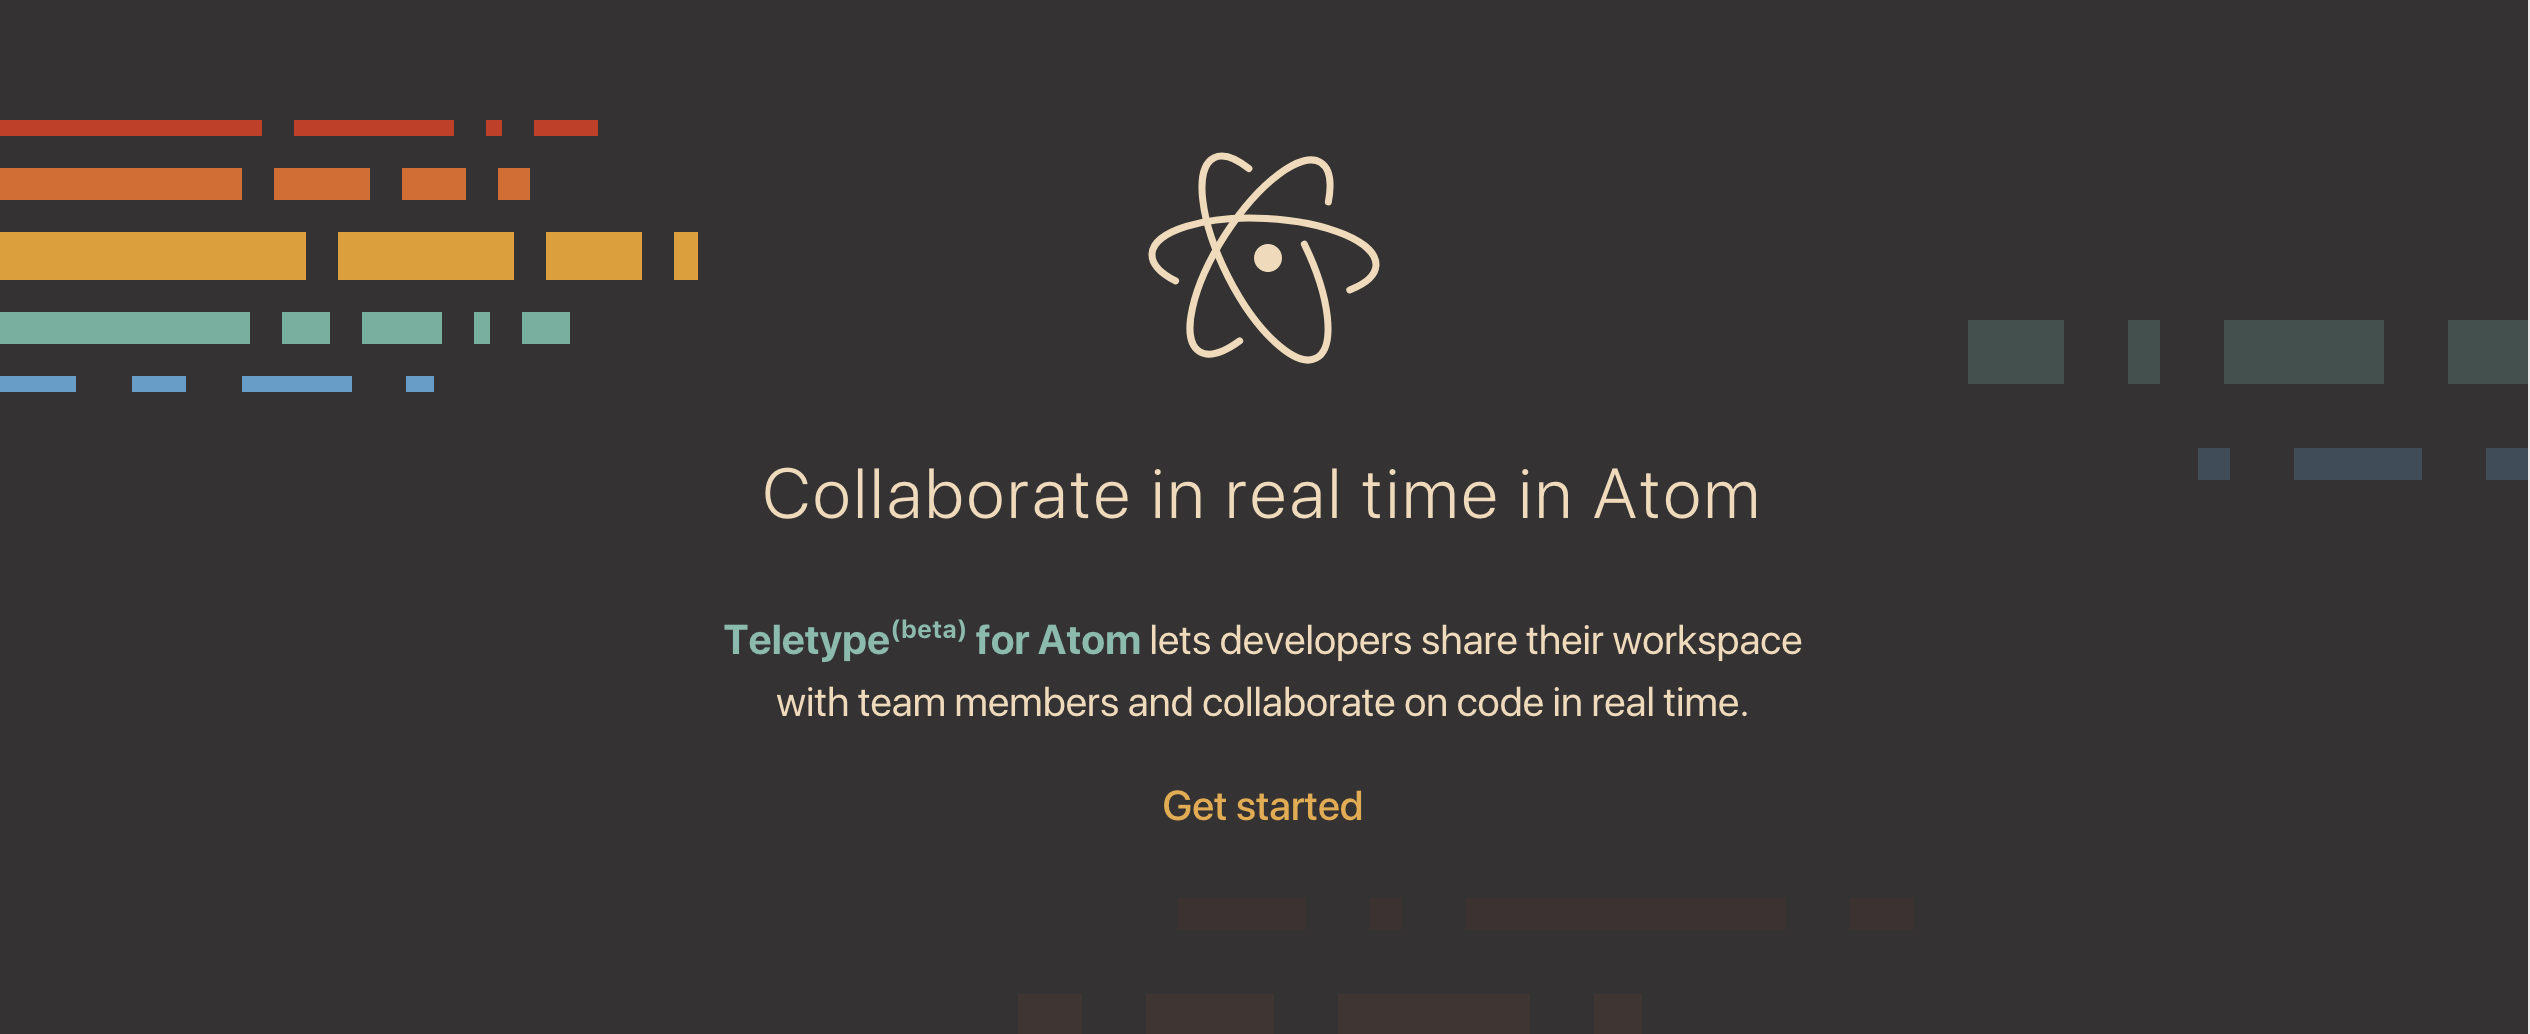 リアルタイムでコードを共同編集できるTeletype for Atom の使い方のサムネイル